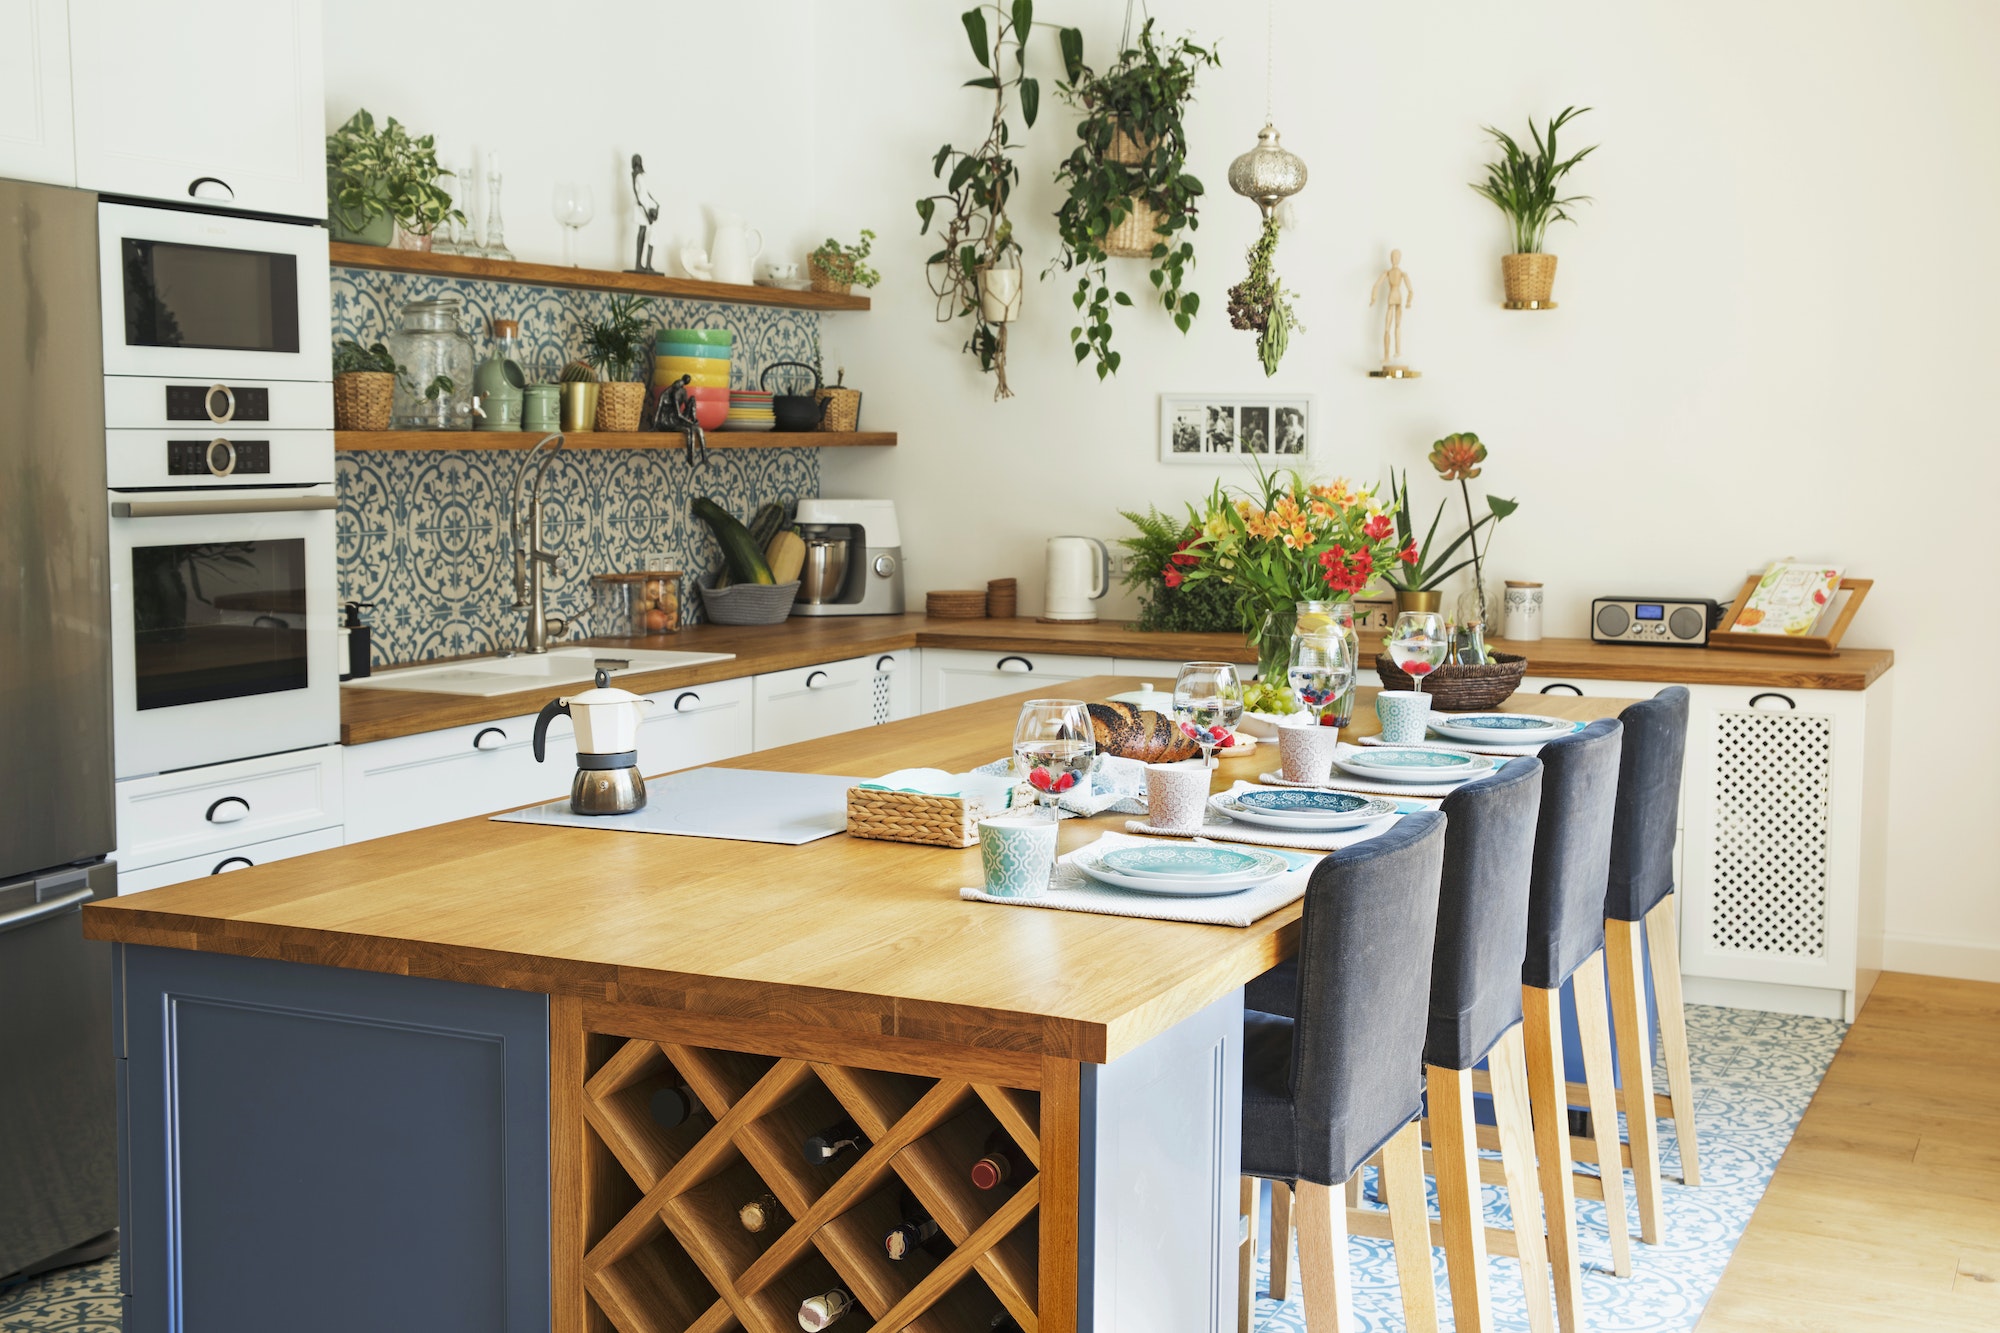 Stylish design of kitchen space interior with kitchen island.